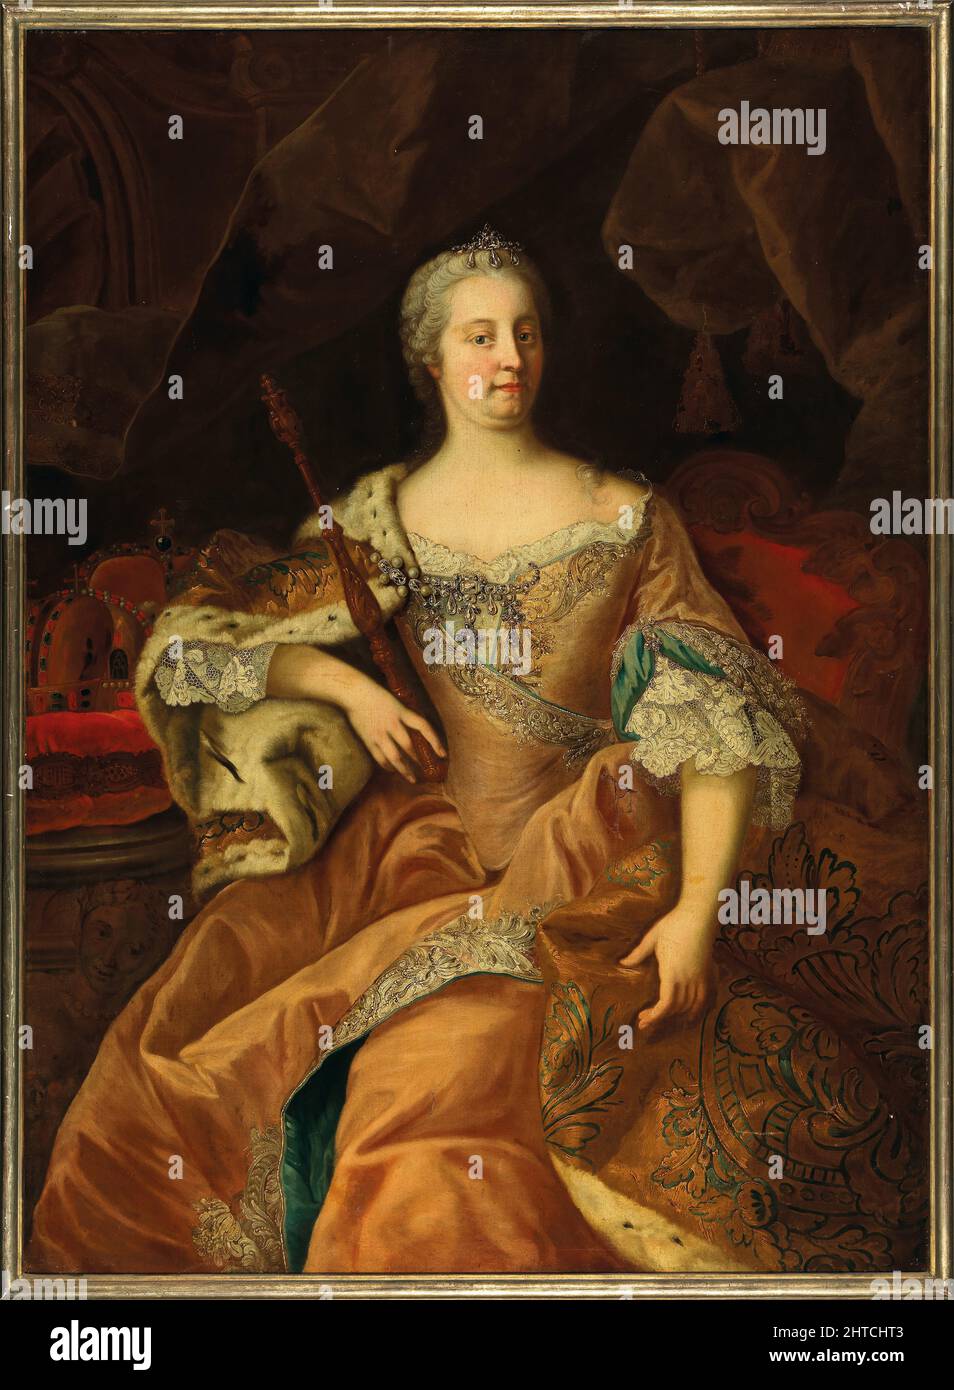 Retrato de la emperatriz María Teresa (1717-1780), Reina de Hungría y Bohemia. Colección privada. Foto de stock